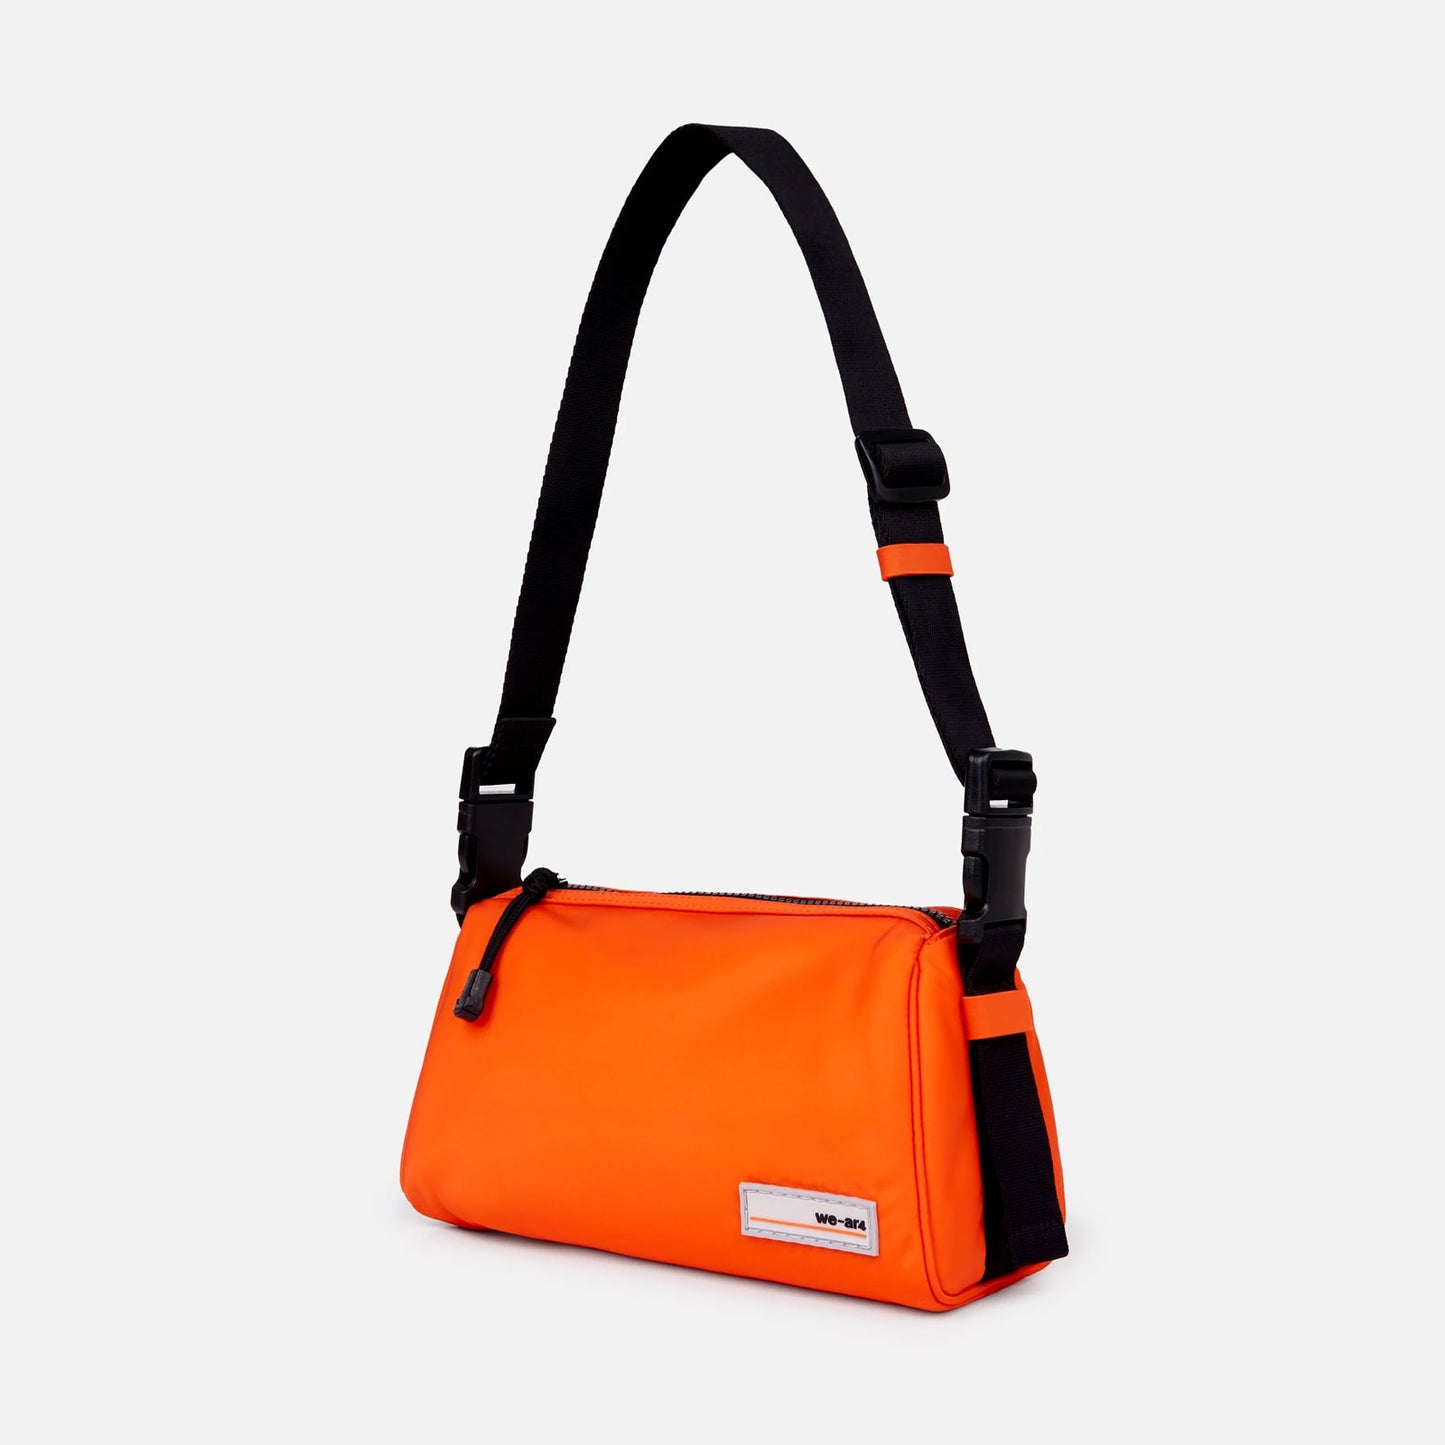 The Kyoto Bag in Orange